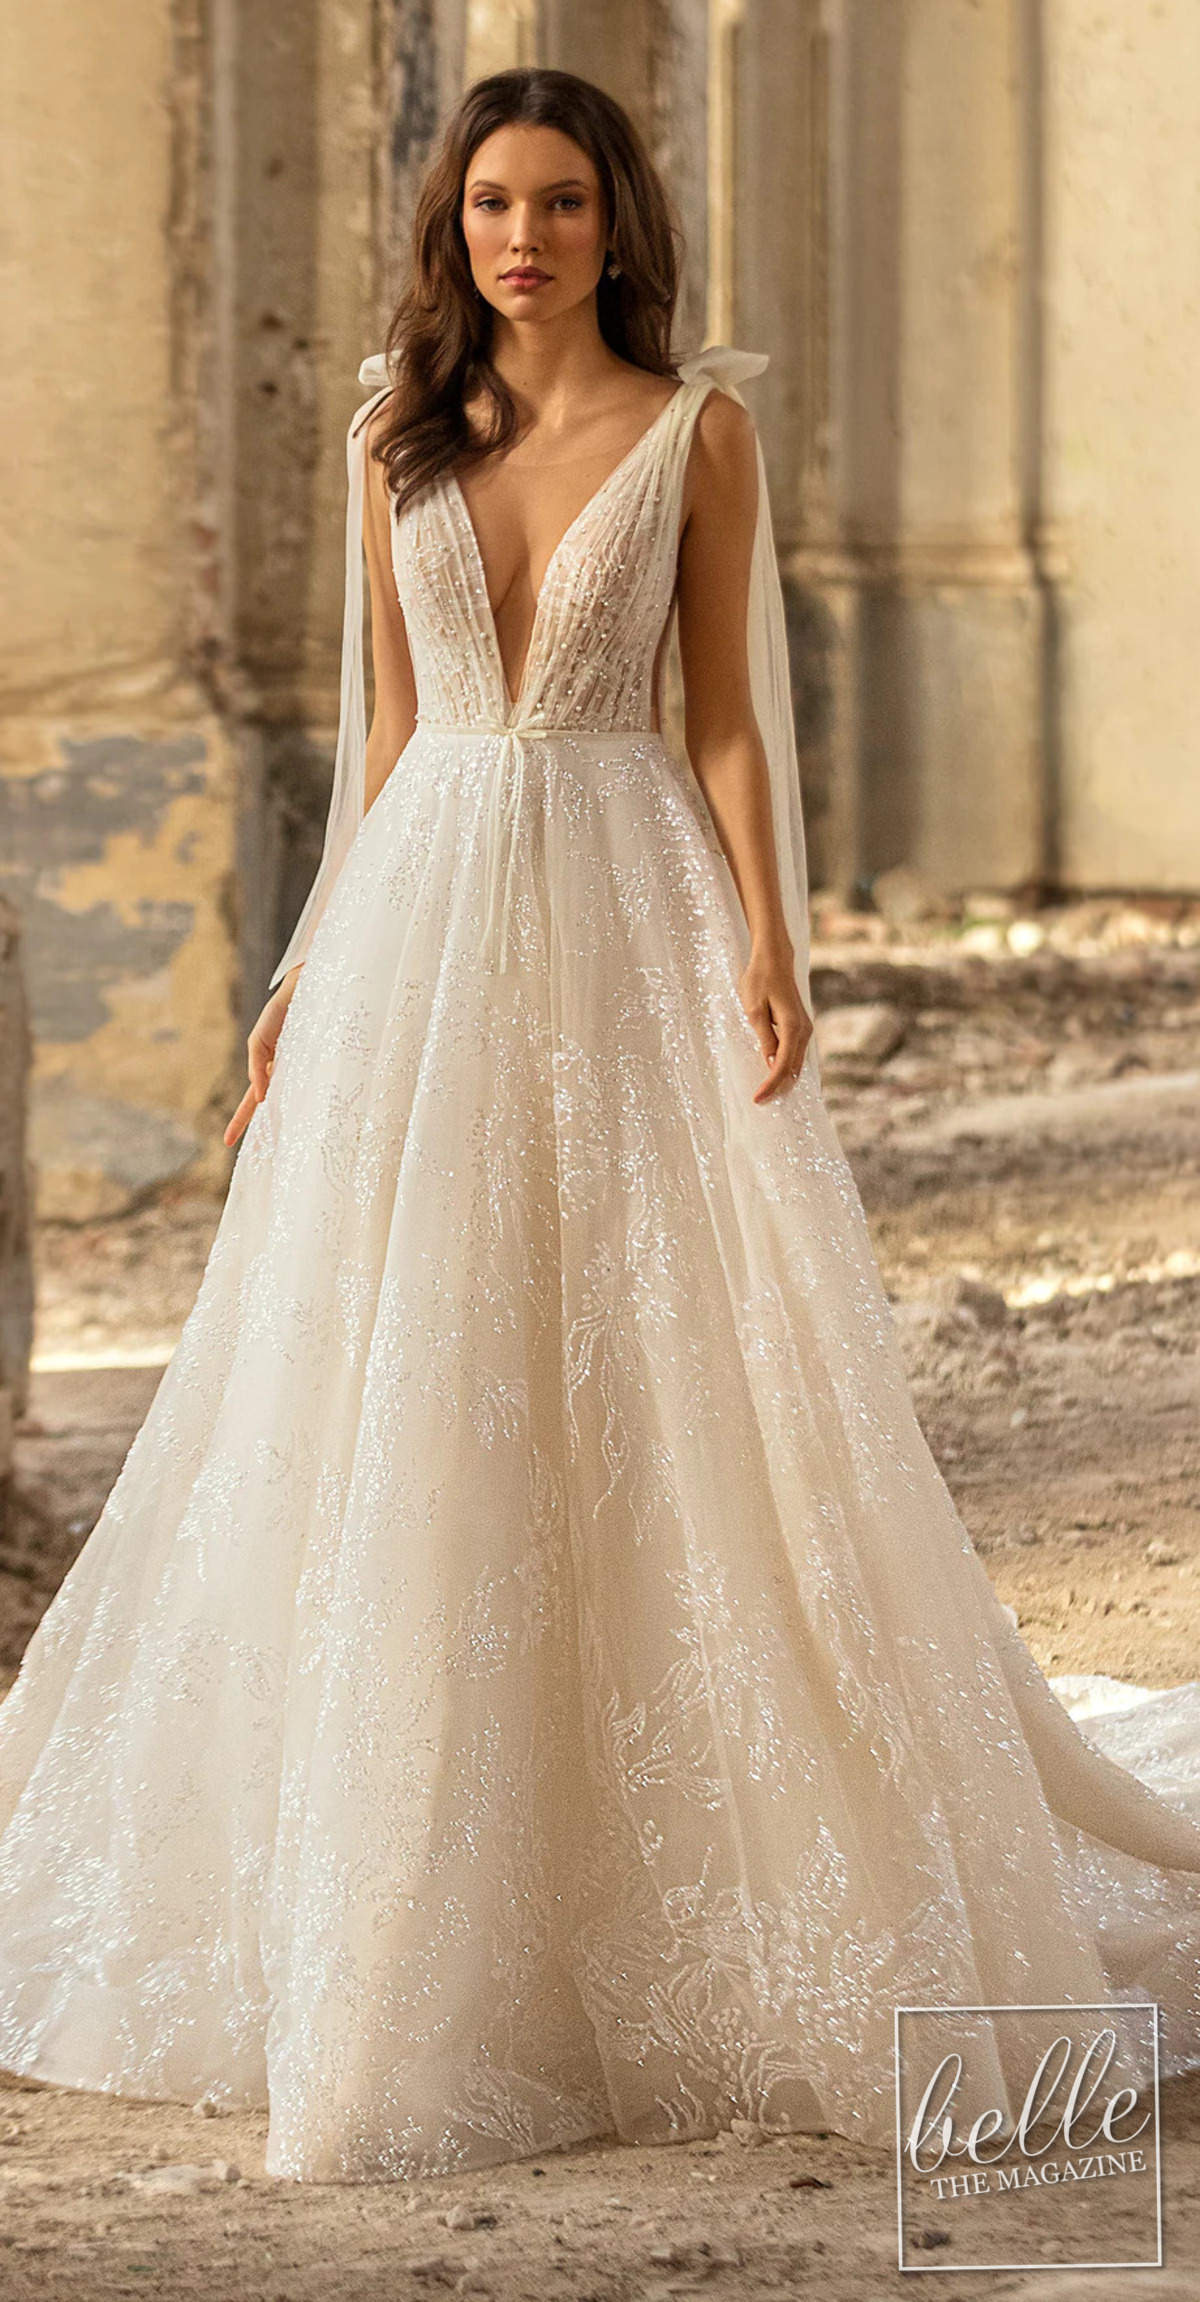 Wedding dress trends 2021 - Deep V Necklines - EVA LENDEL Simona